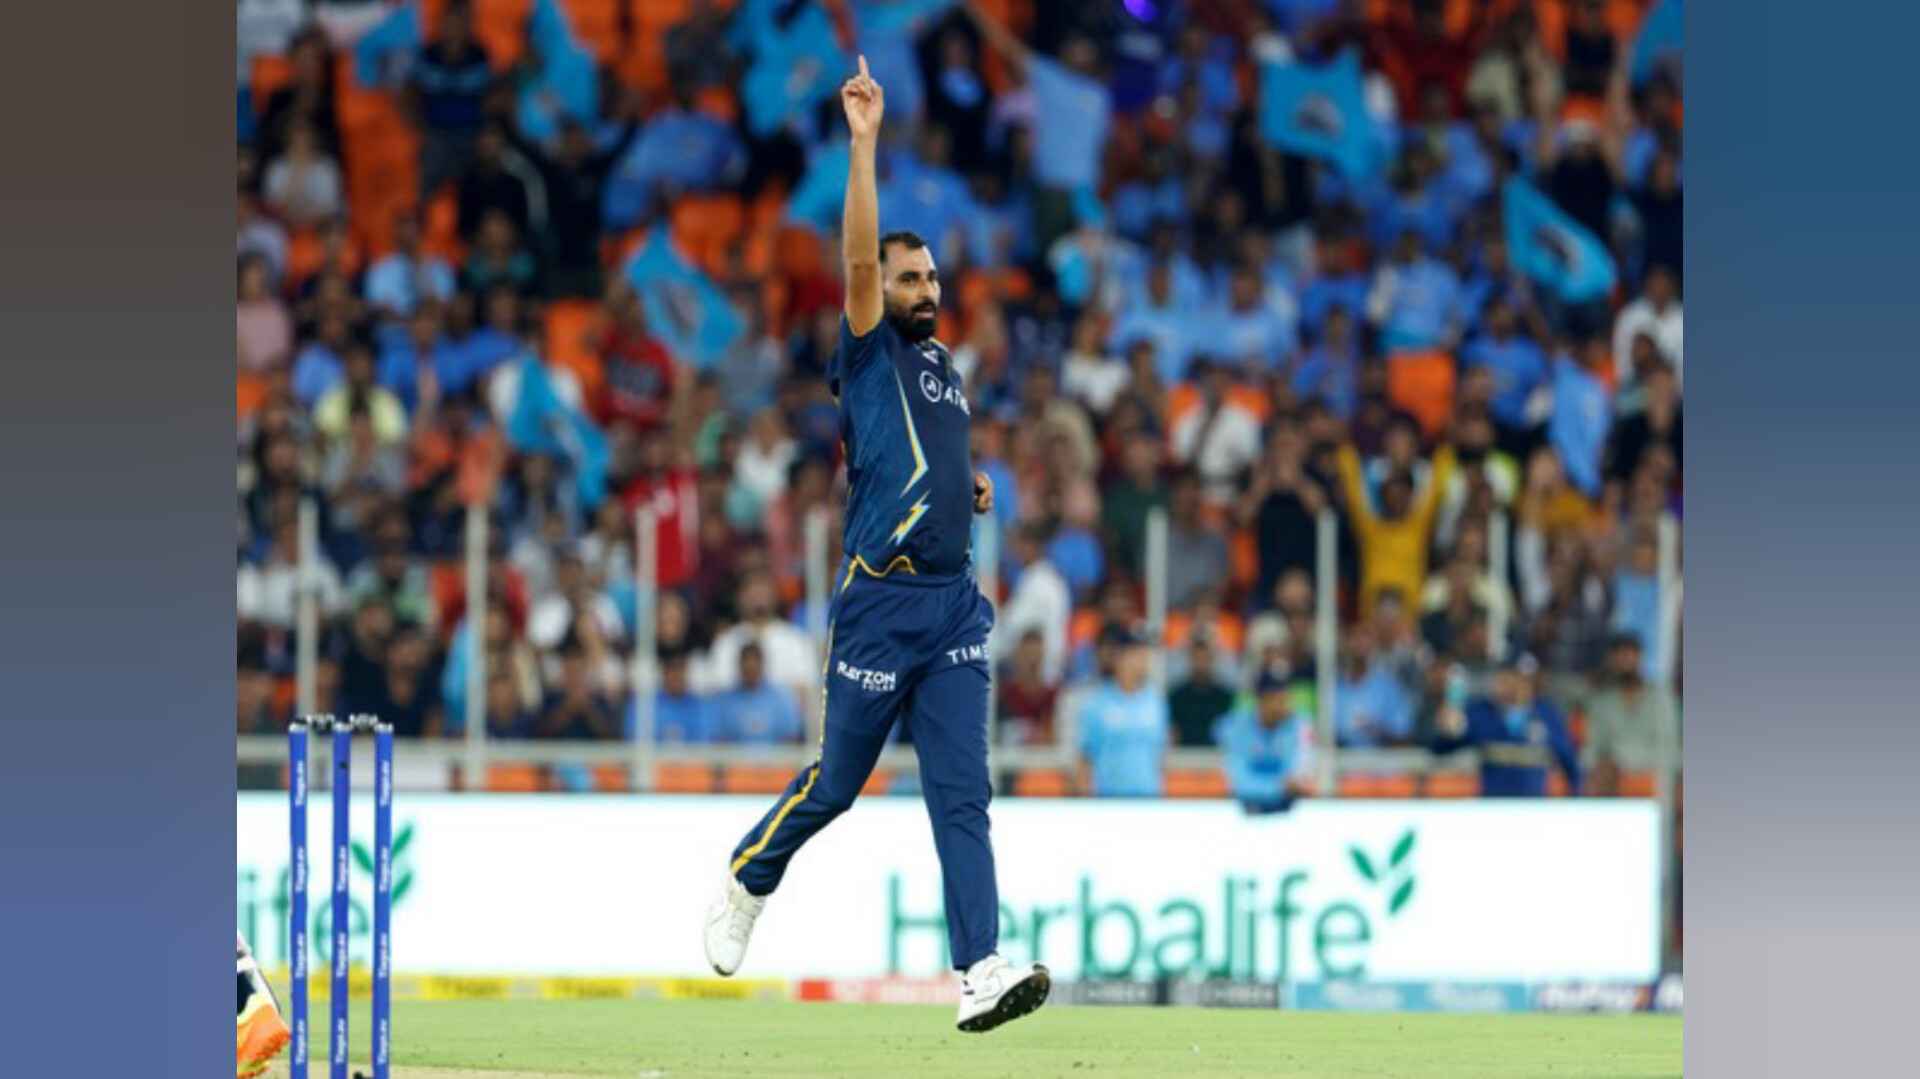 टी20 विश्व कप से पहले टीम इंडिया की चिंता बढ़ी, चोट के चलते मोहम्मद शमी आईपीएल से बाहर